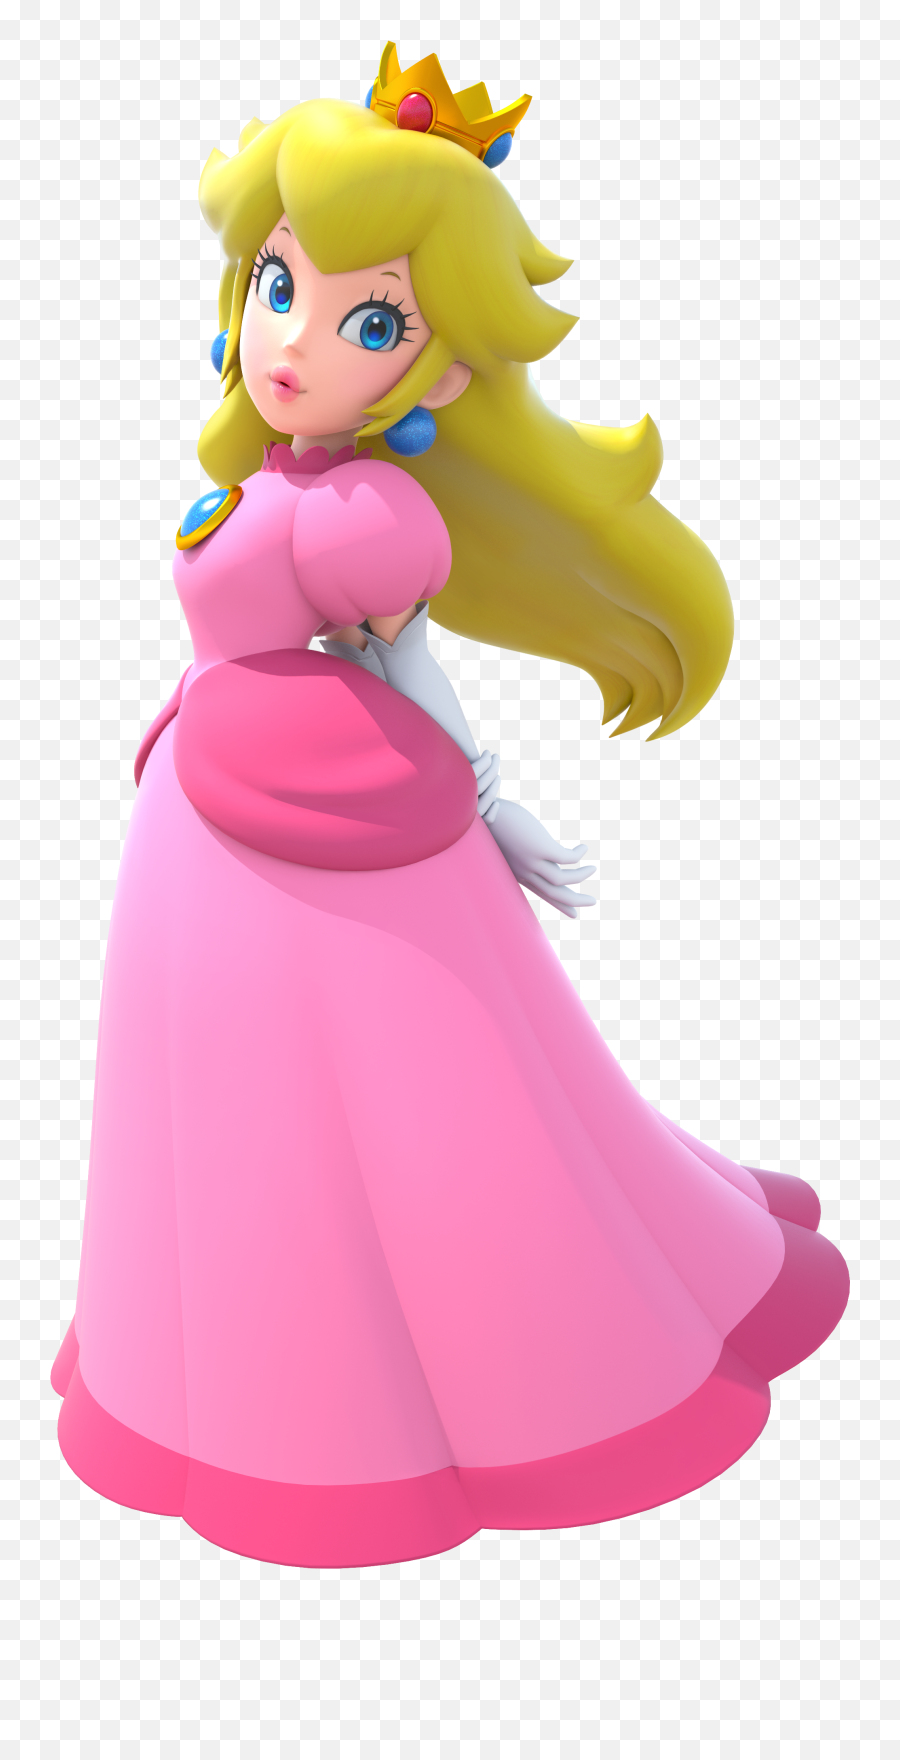 Princess Peach - Princess Peach Emoji,Super Princess Peach Emotions